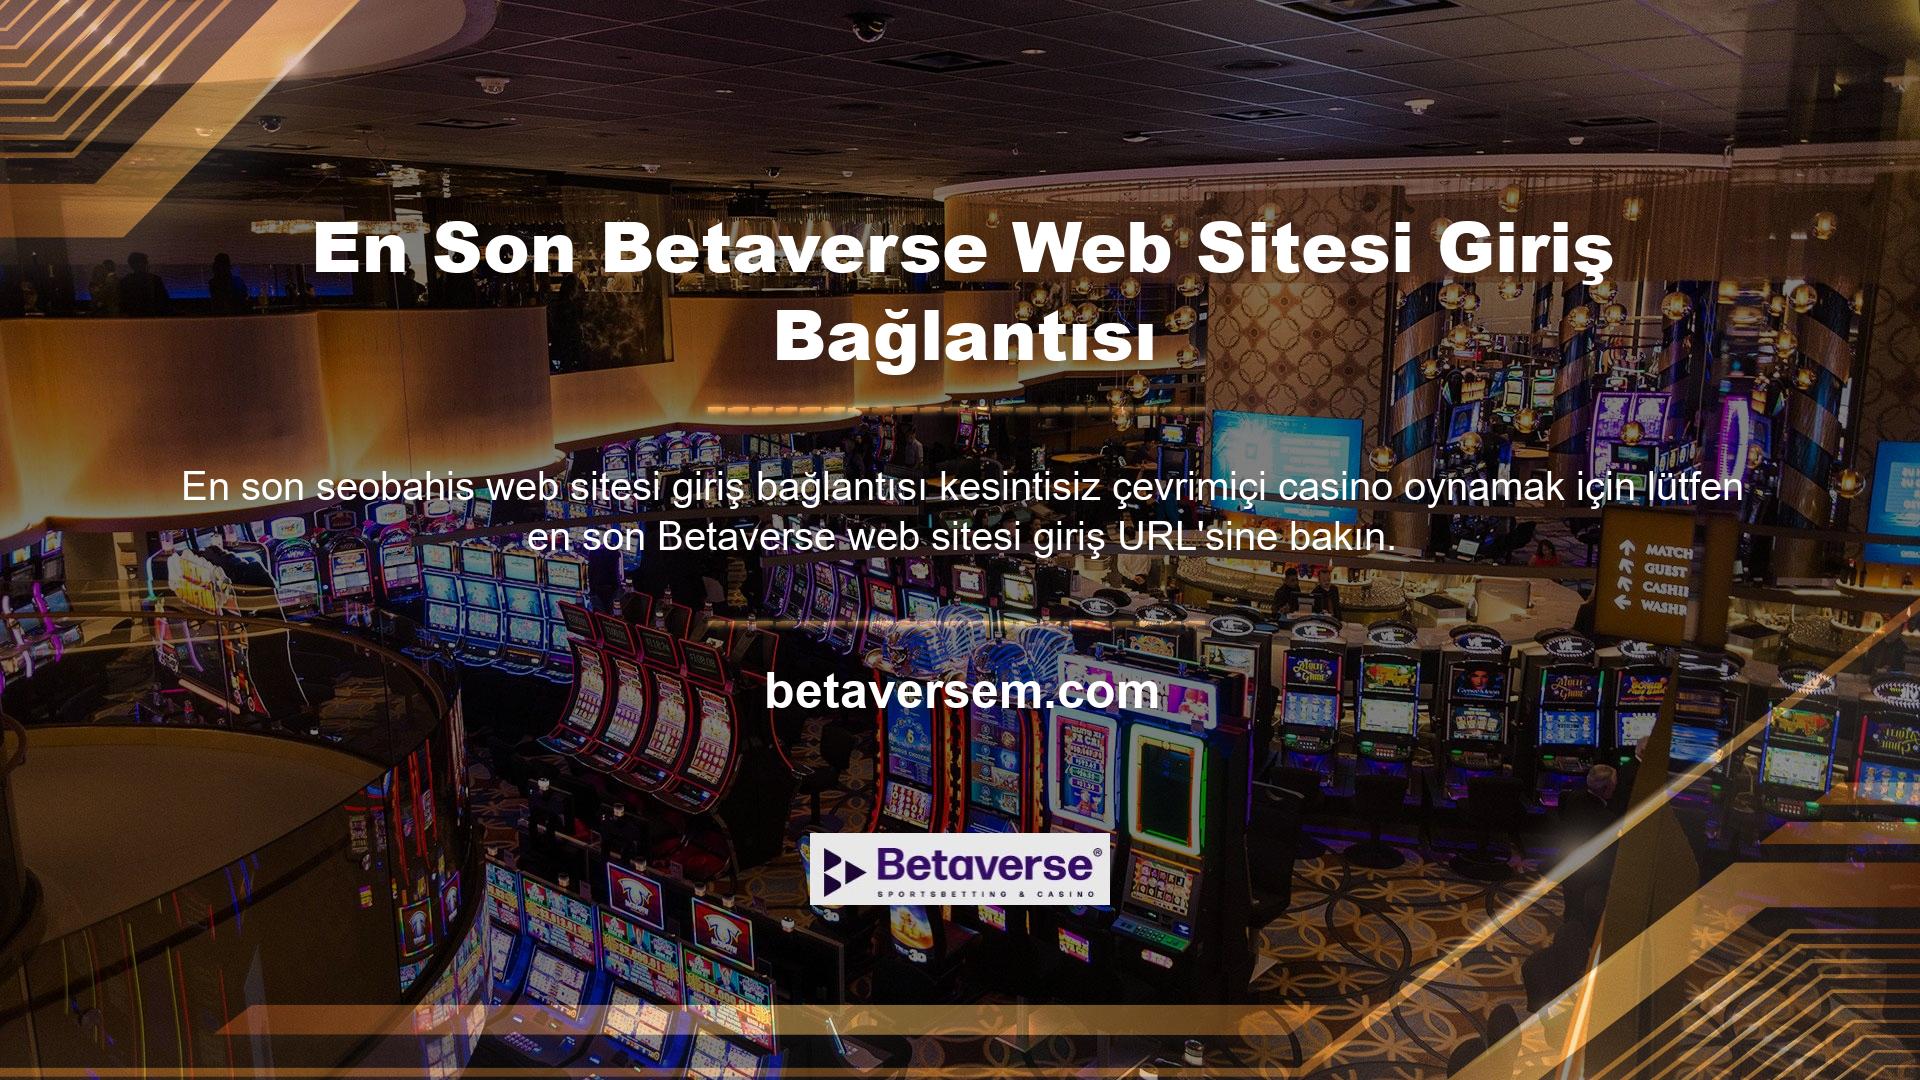 Yeni oturum açma URL'nizi bilmiyorsanız, siteye giriş yapamaz ve çevrimiçi casino oyunları oynayamazsınız